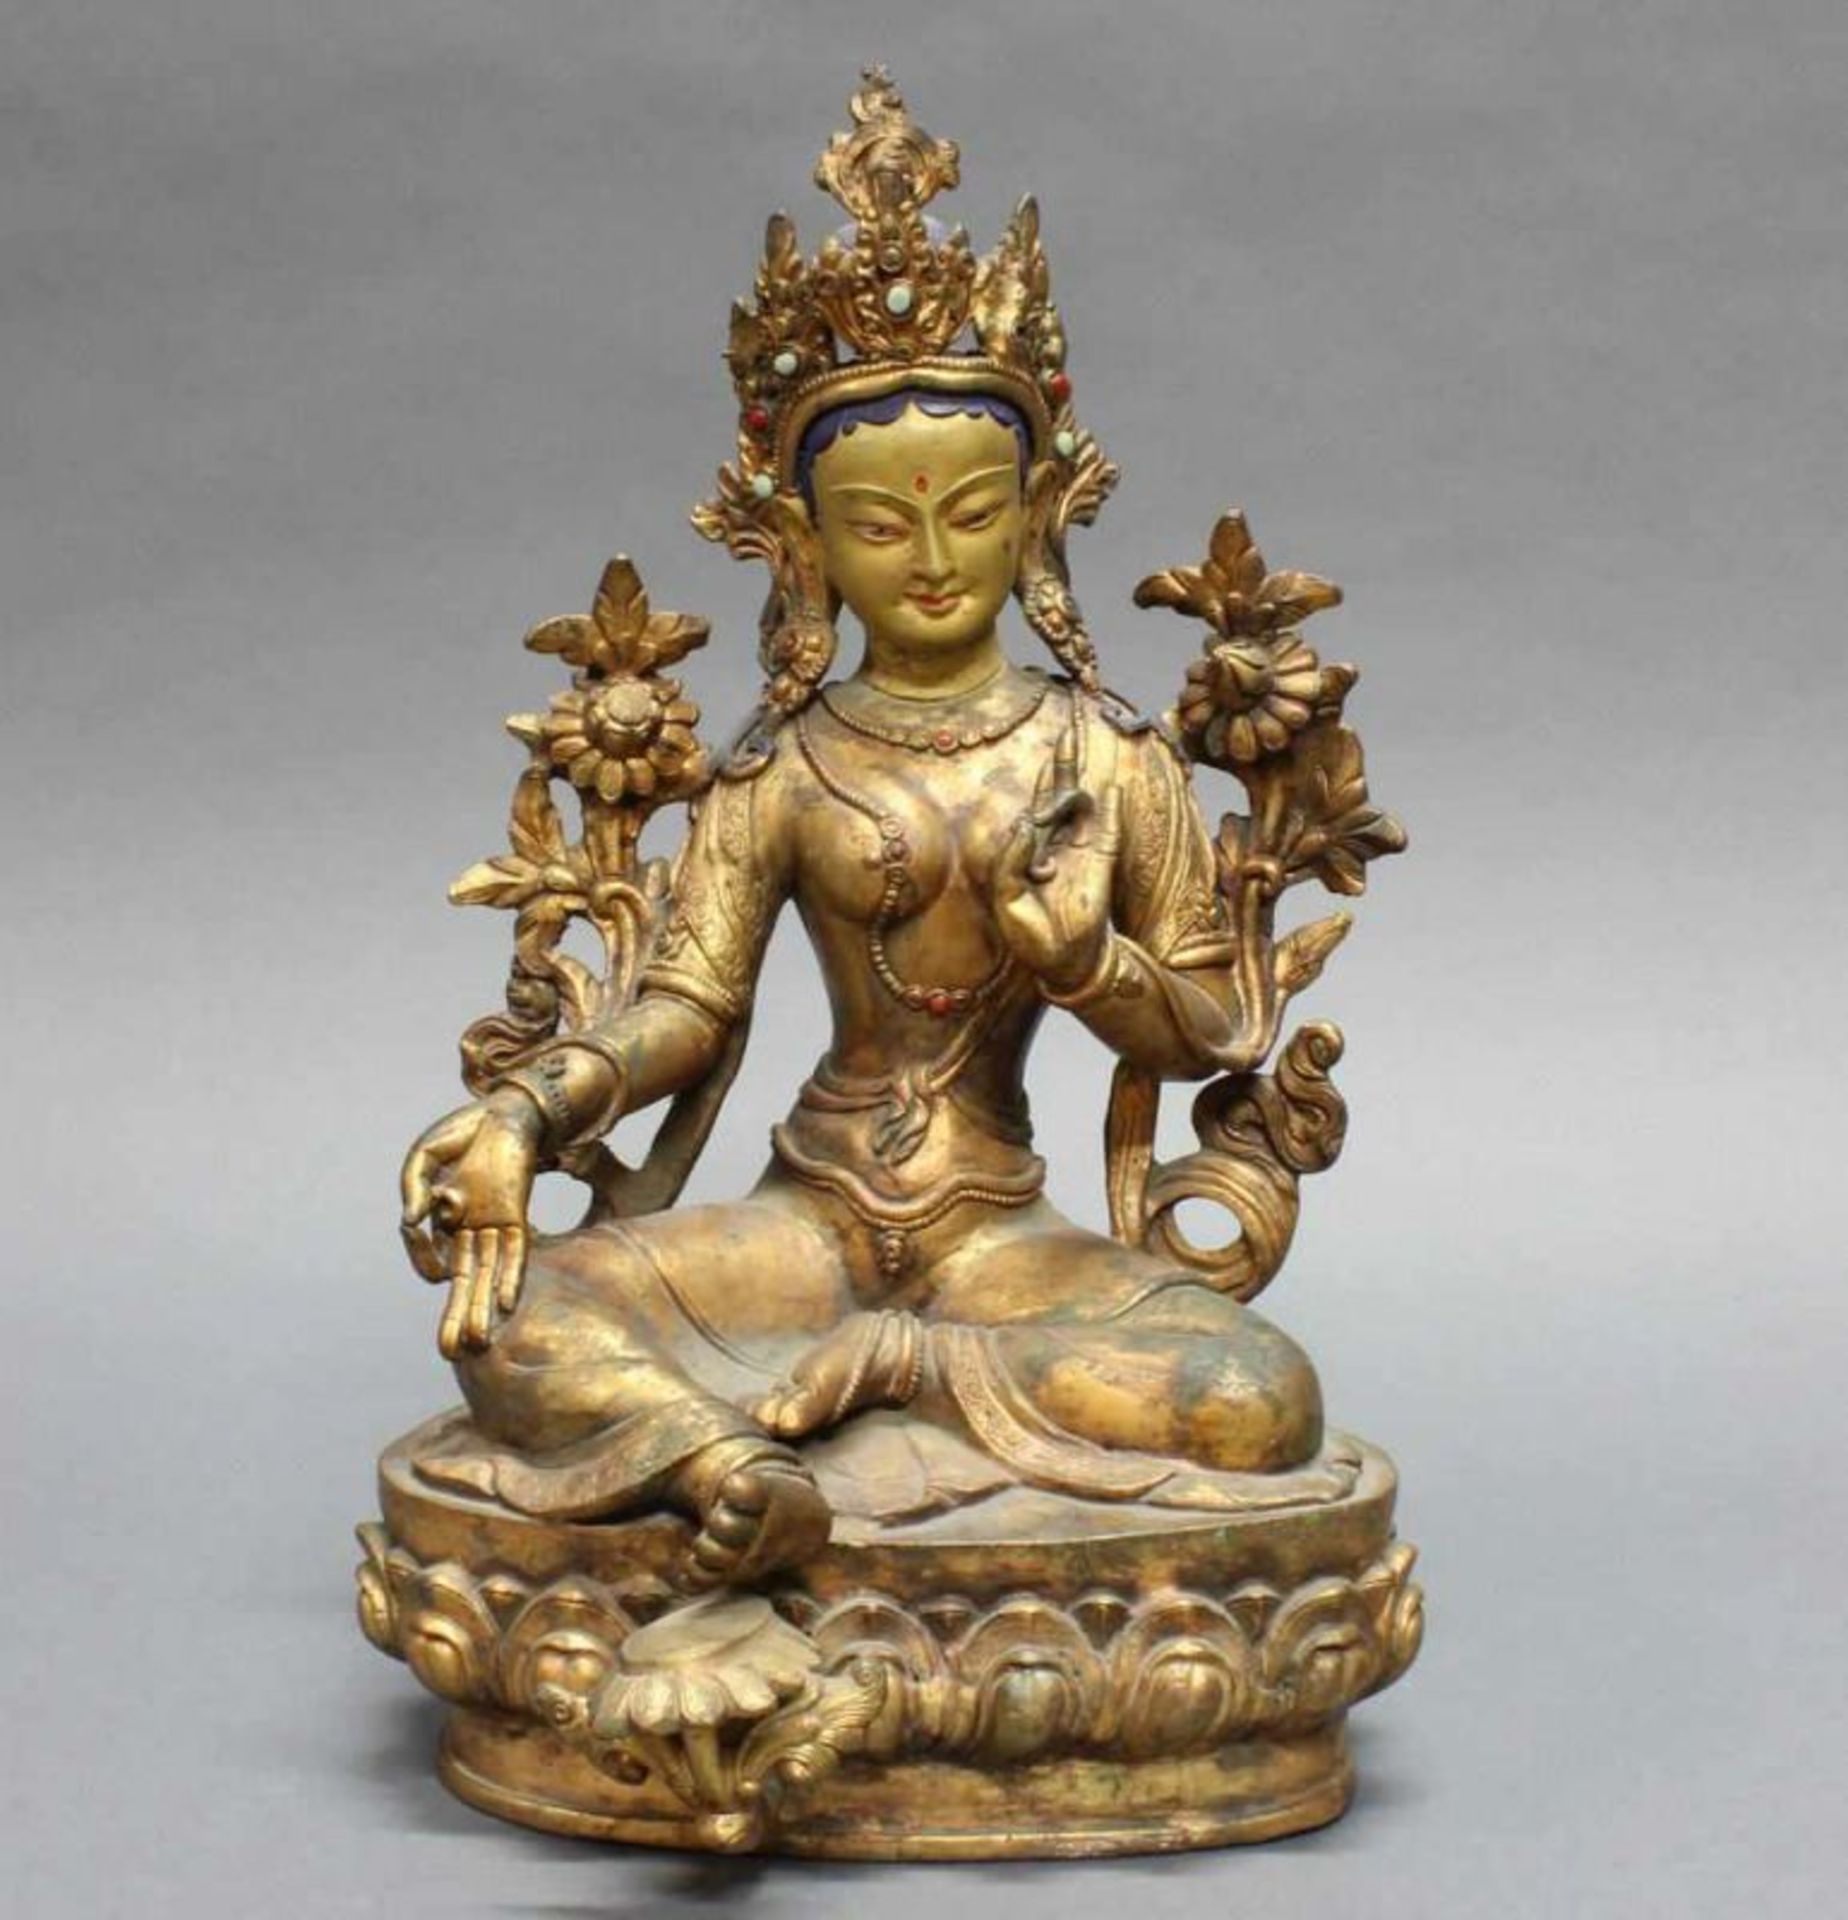 Skulptur, "Syama-Tara", Tibet, 20. Jh., Bronze, vergoldet, auf einem Lotussockel sitzend, die rechte